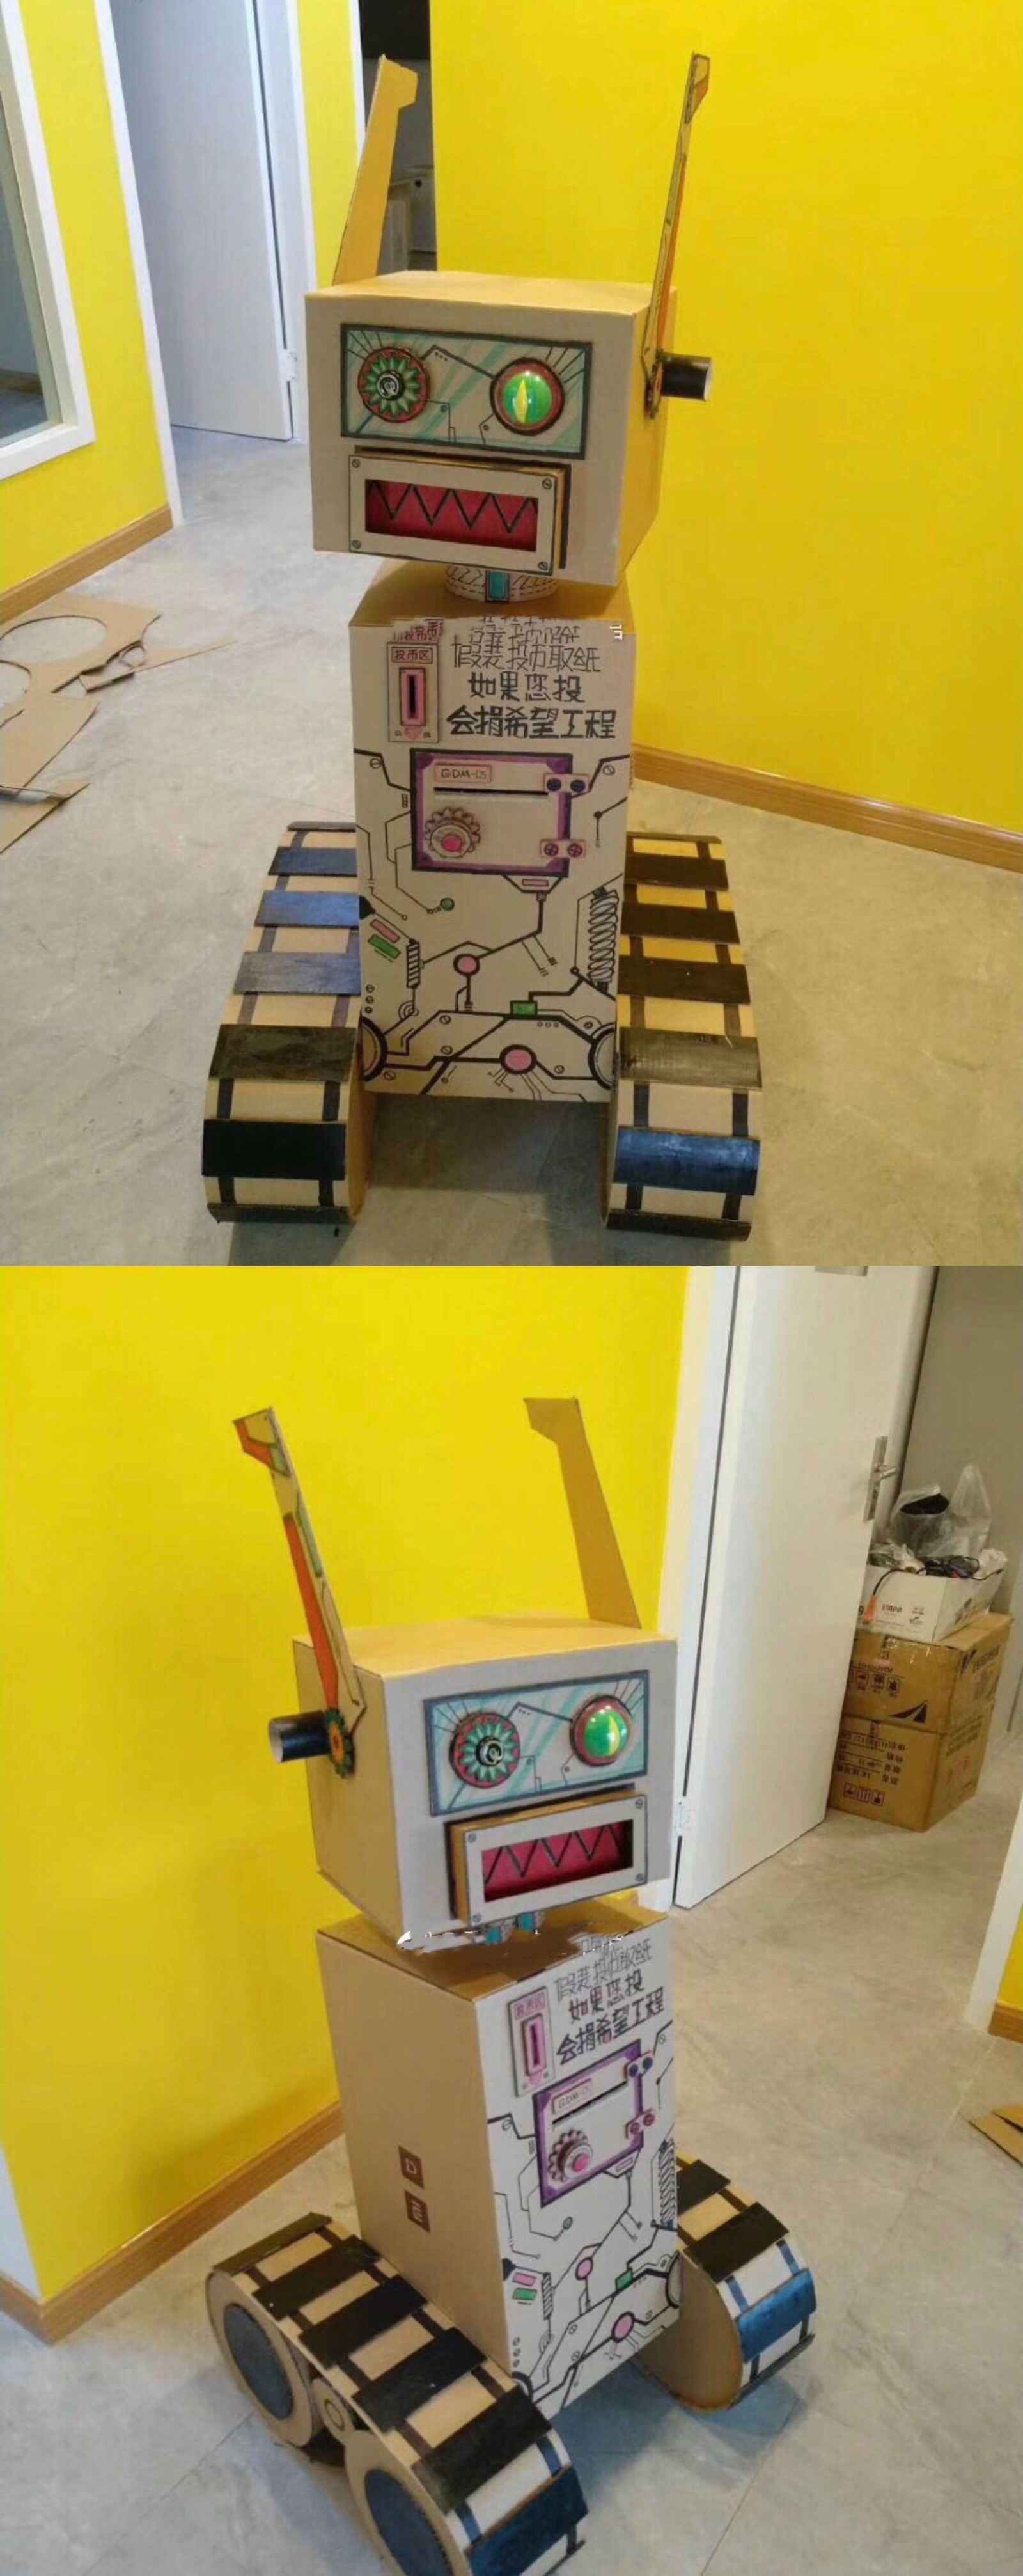 《原创》DIY制作otto机器人_物联网与智能家居-面包板社区